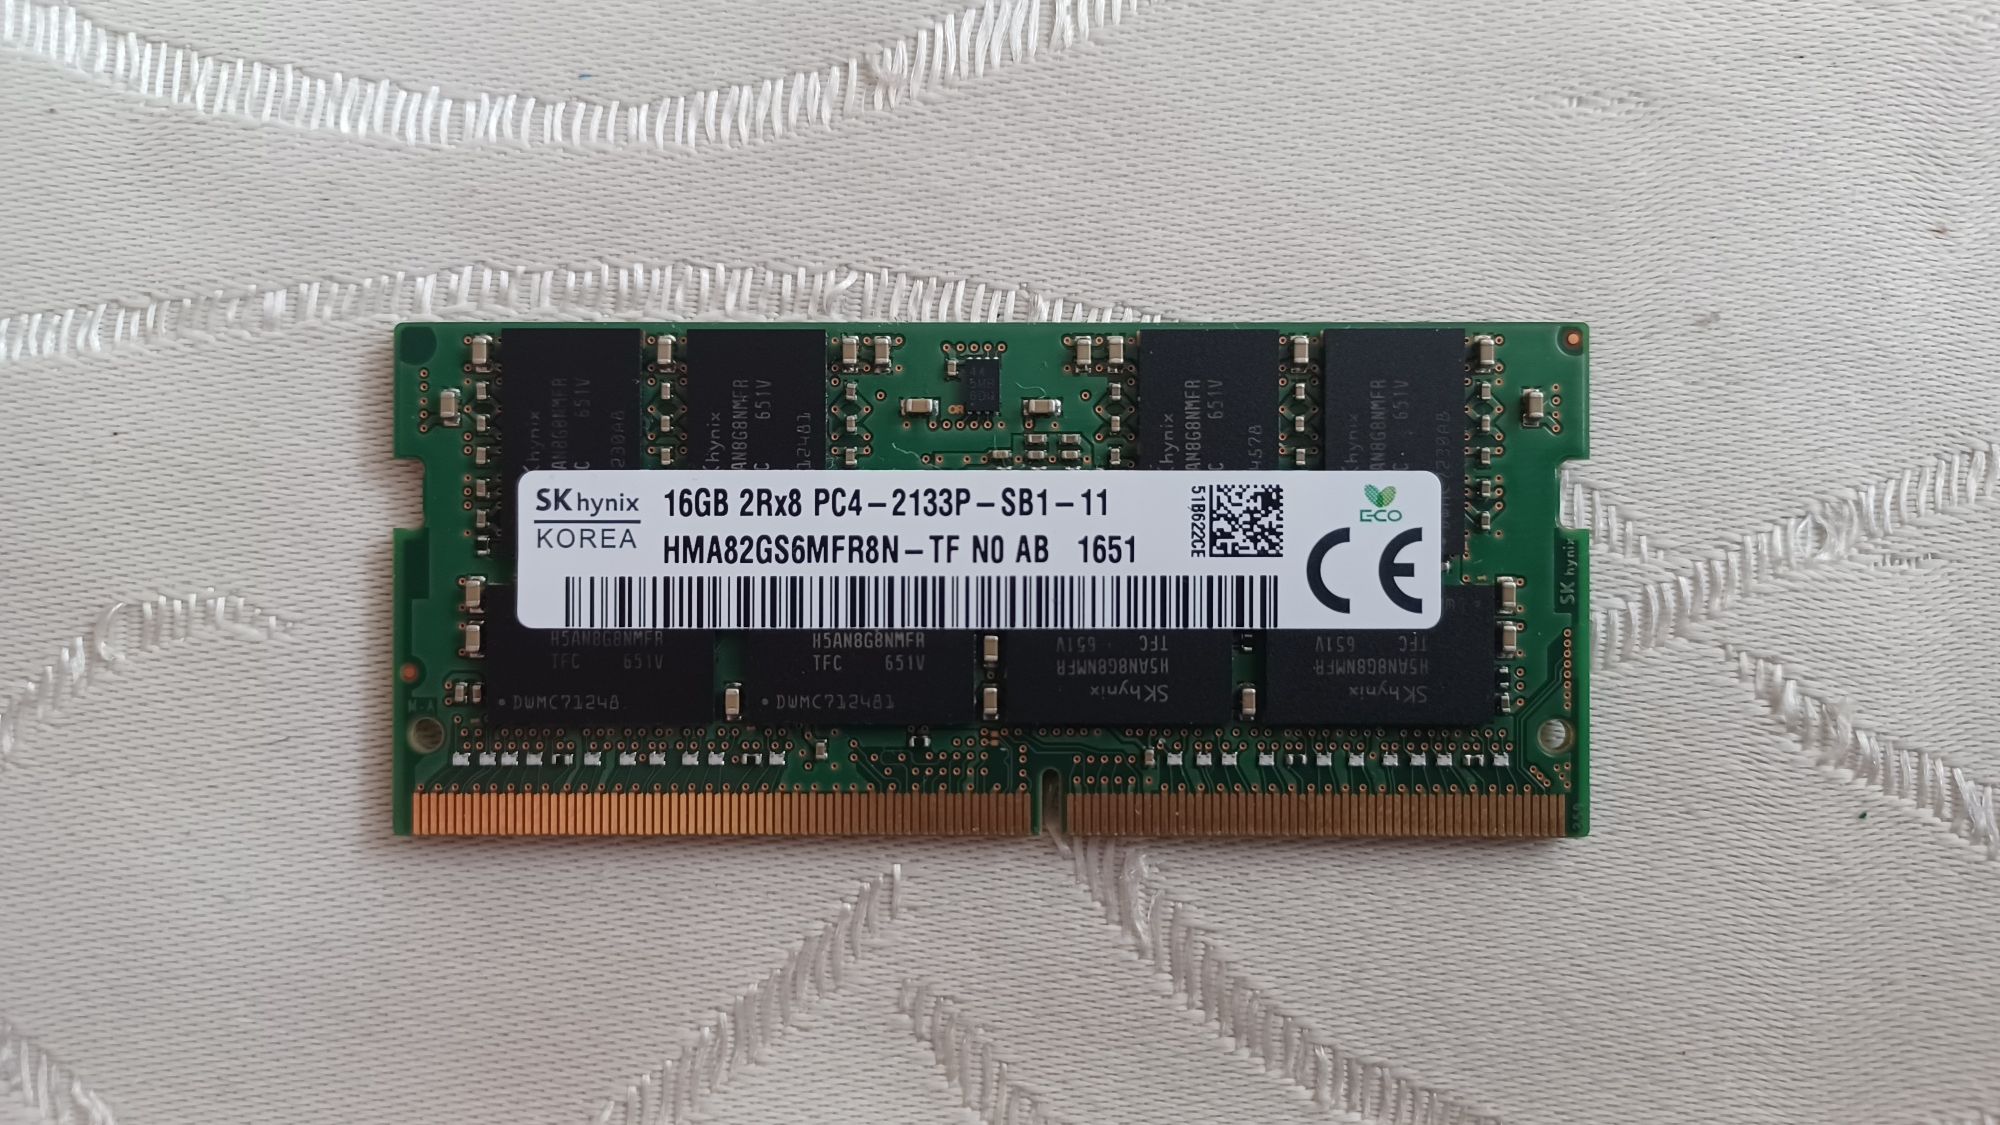 Pamięć RAM do laptopa, 16GB PC4, 2133P, Hynix, Gwarancja !